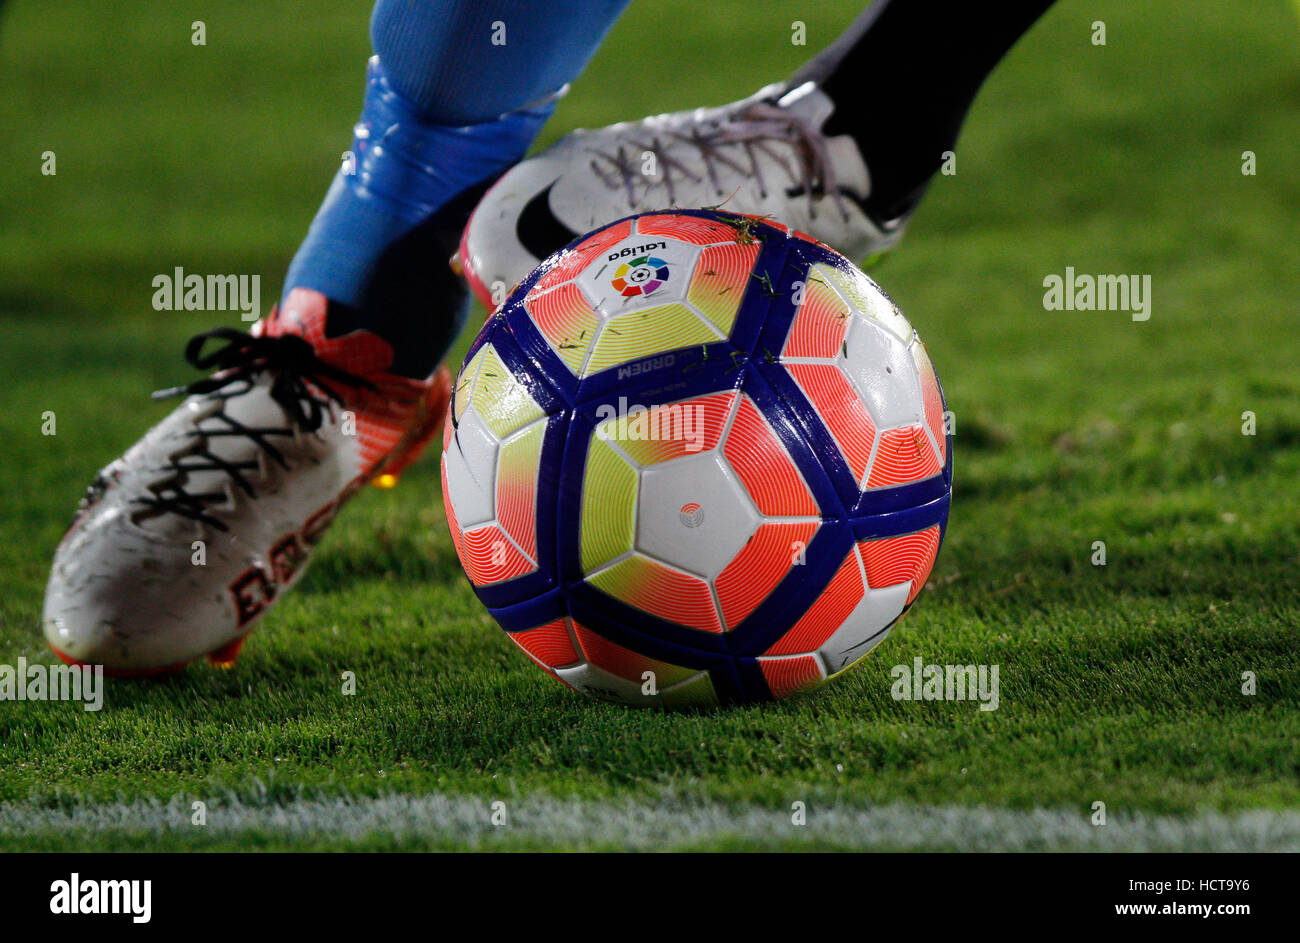 Détail des pieds d'un joueur de foot en exécutant avec la balle Photo Stock  - Alamy